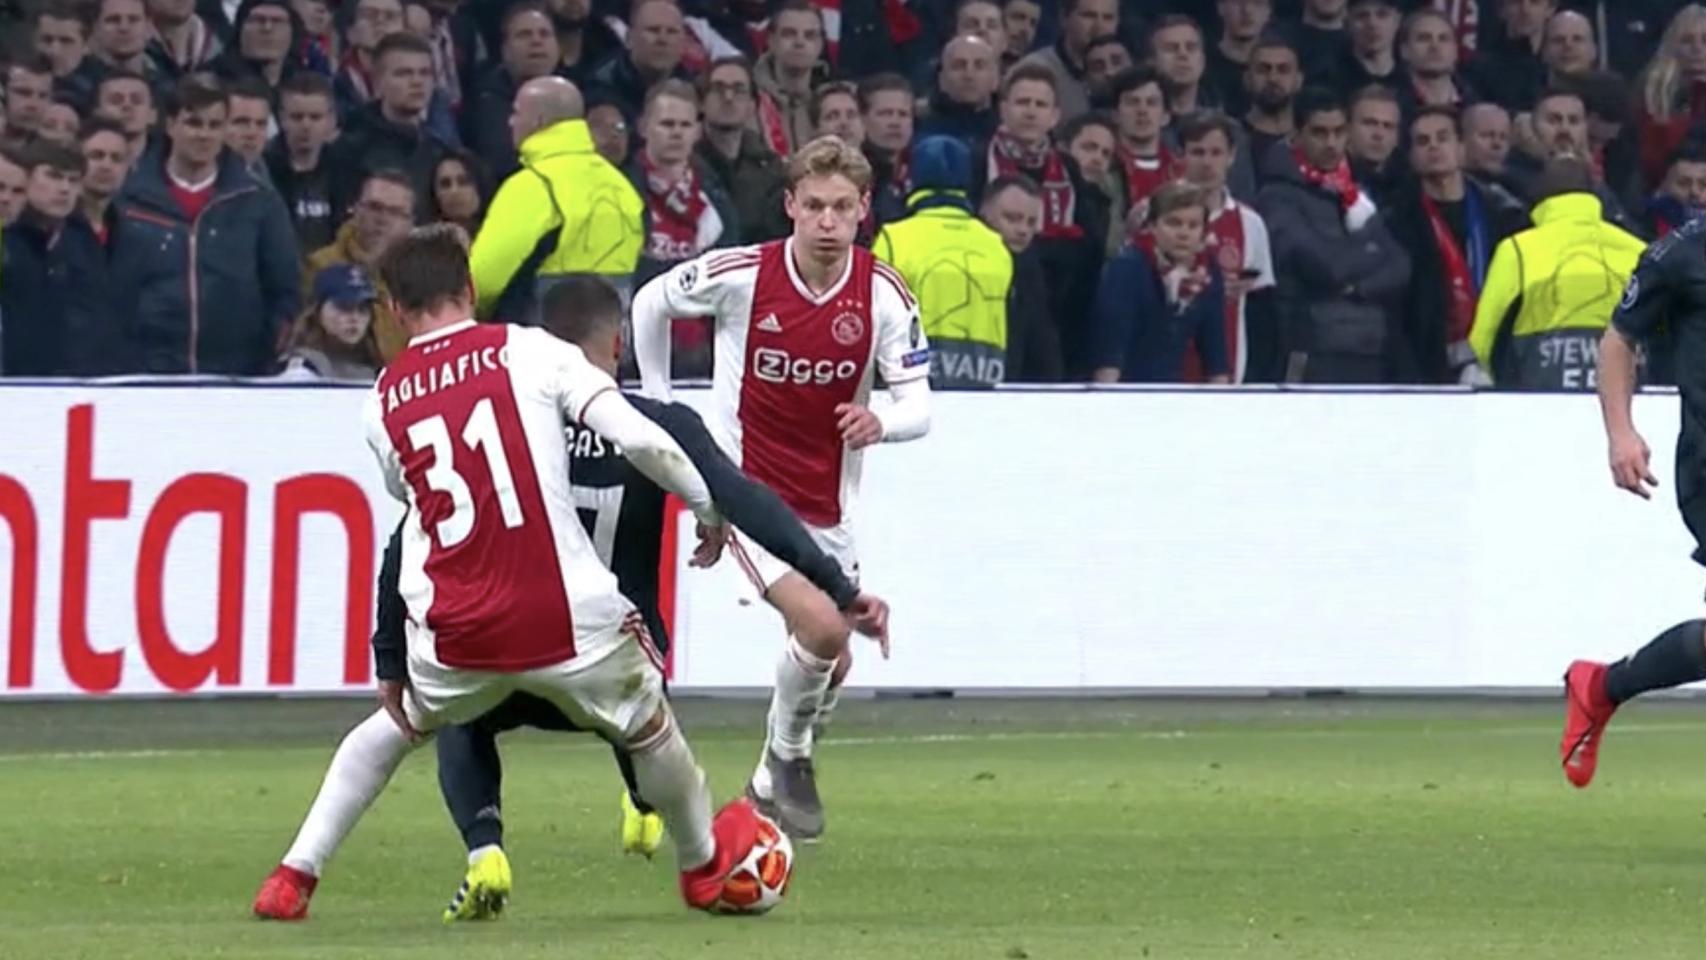 Falta a Lucas Vázquez antes del gol del Ajax